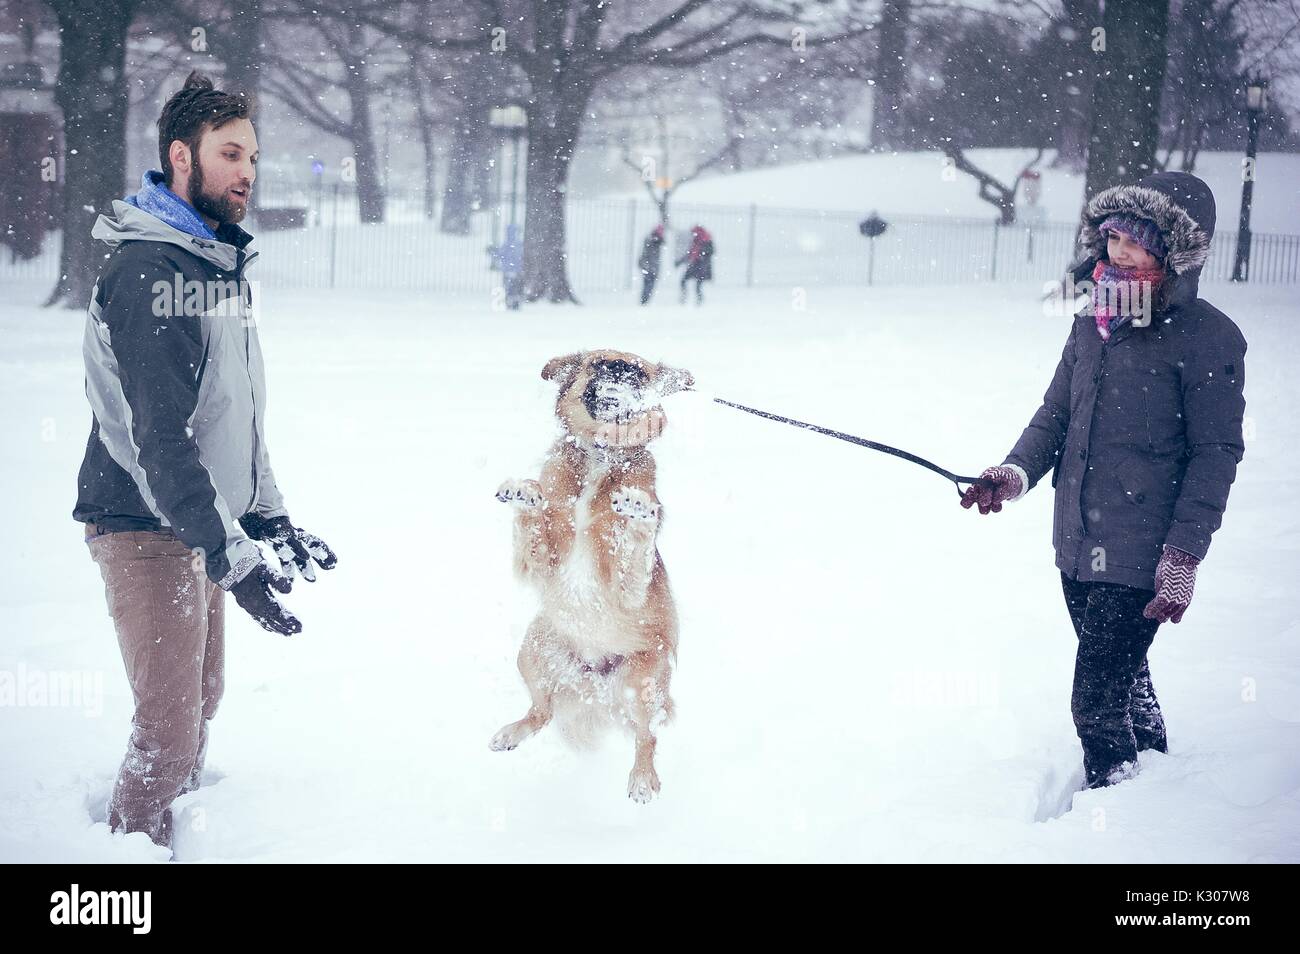 Ein Hund springt einen Schneeball in den Mund zu verfangen, wie seine Besitzer auf beiden Seiten mit ihm spielen im Schnee stehen, während einer Snow Day an der Johns Hopkins University, Baltimore, Maryland, 2016. Stockfoto